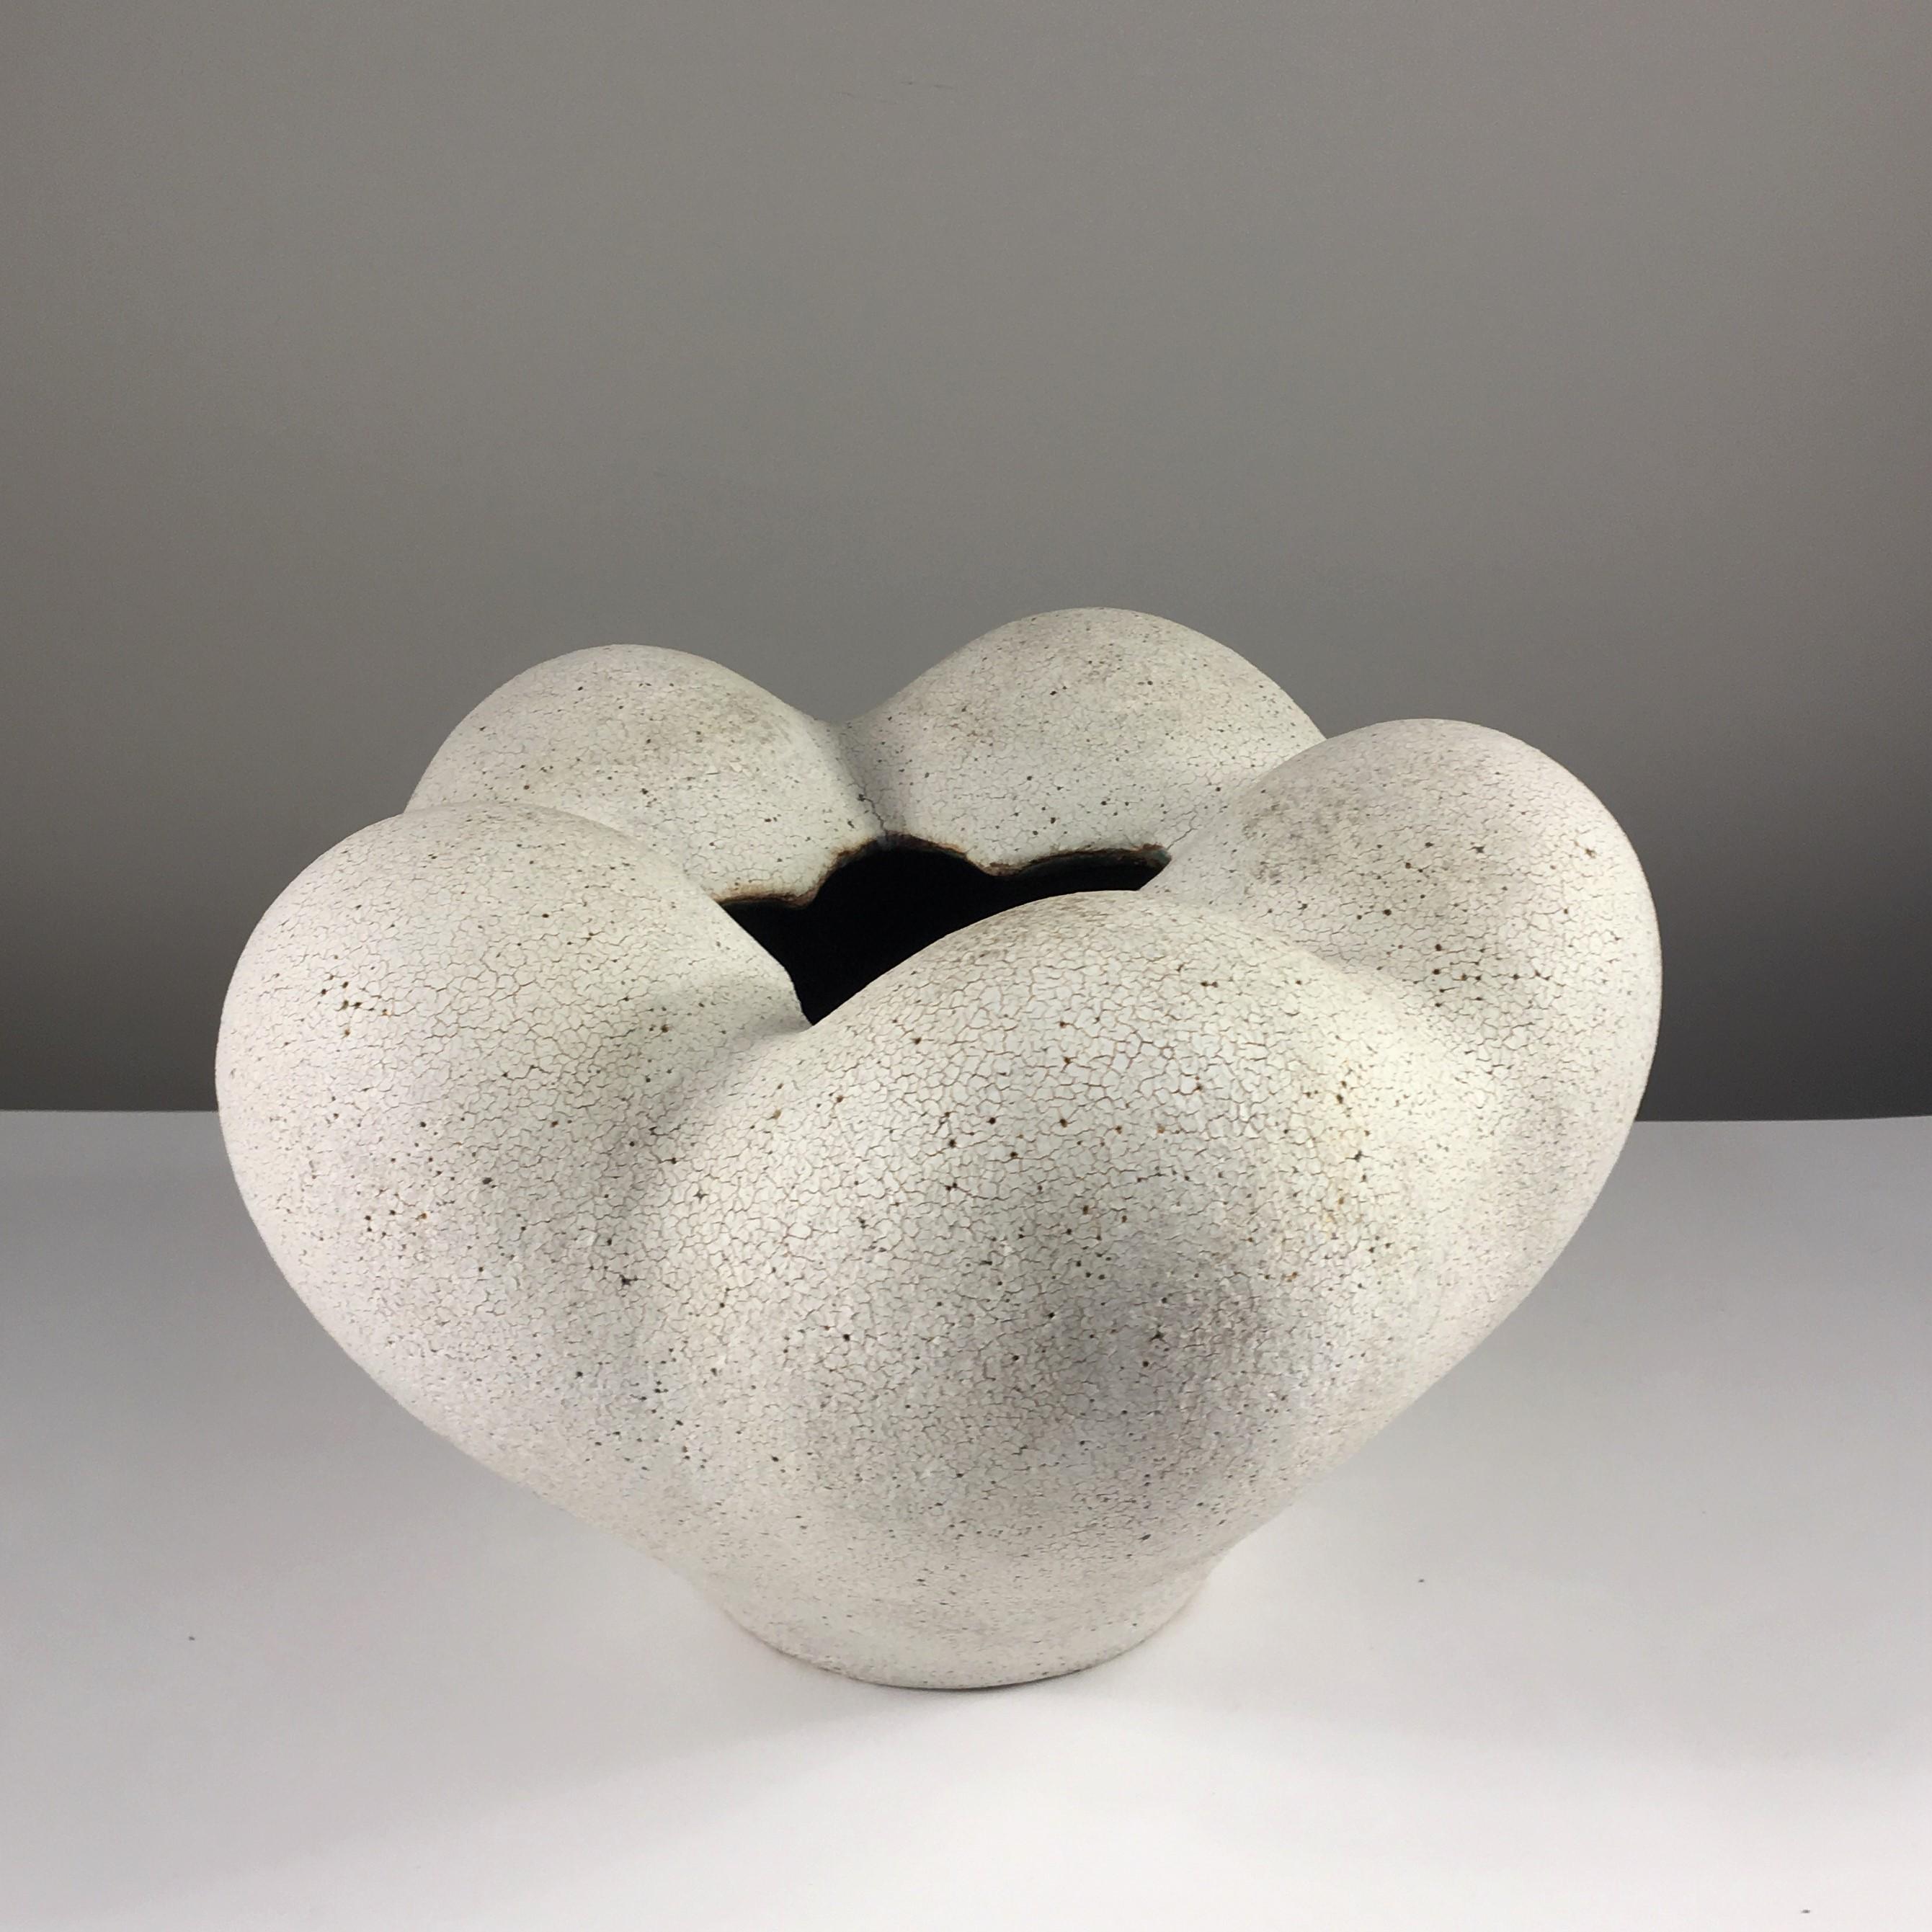 Blütenvase aus Keramik von Yumiko Kuga. Maße: Höhe 8